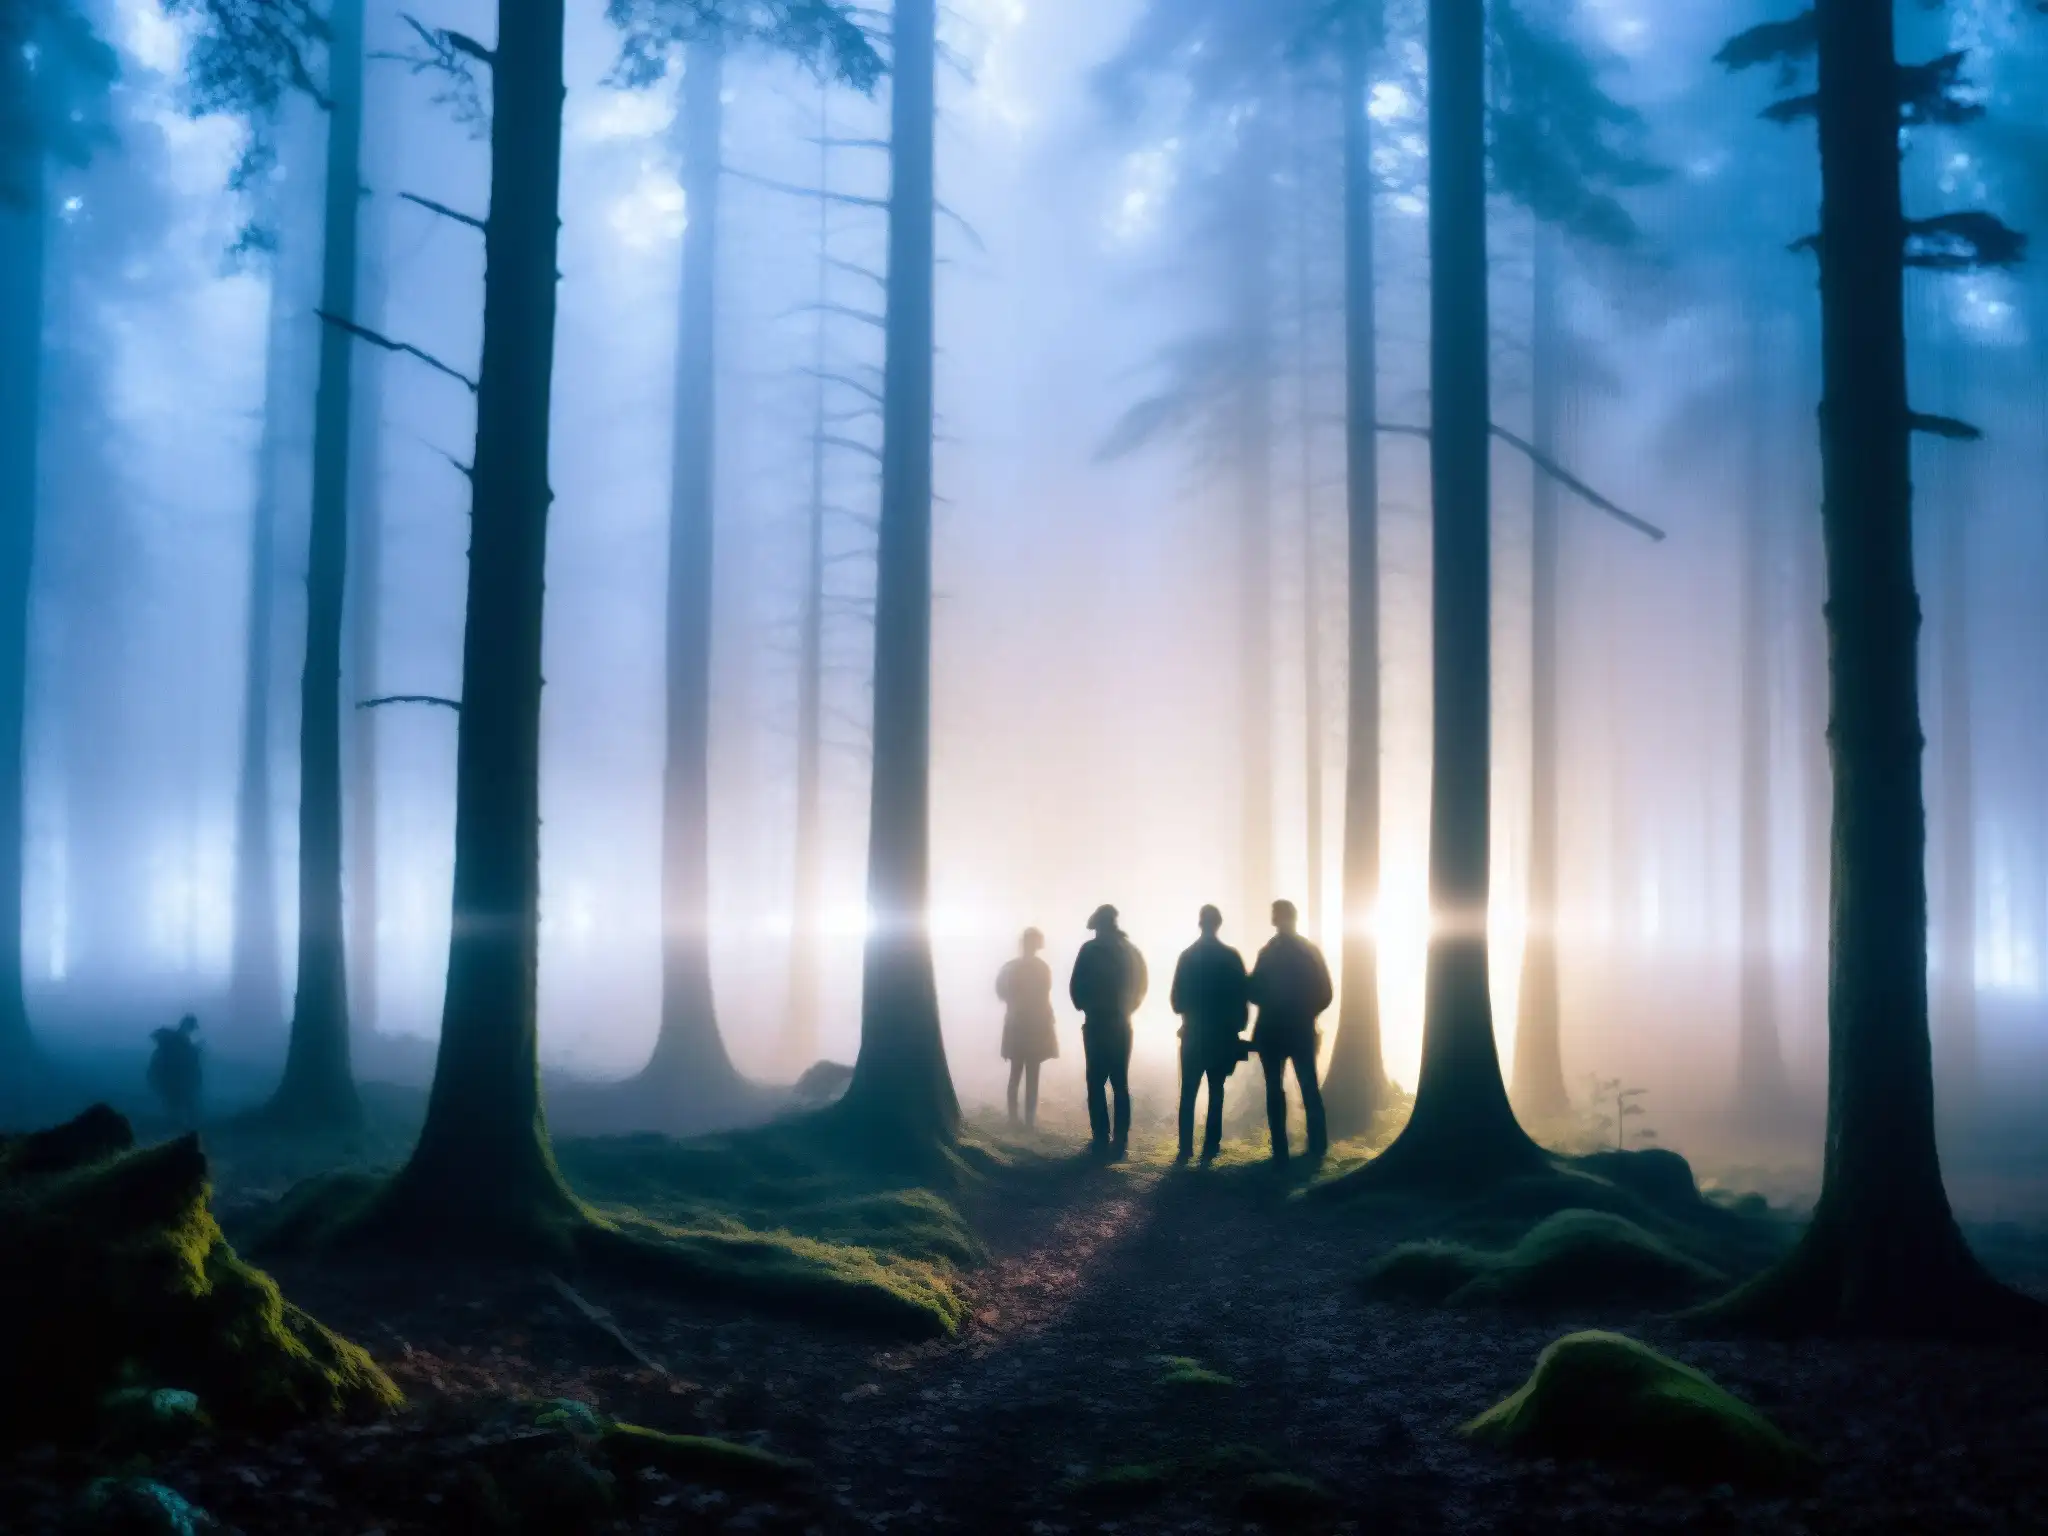 Grupo busca en bosque oscuro, con miedo y confusión